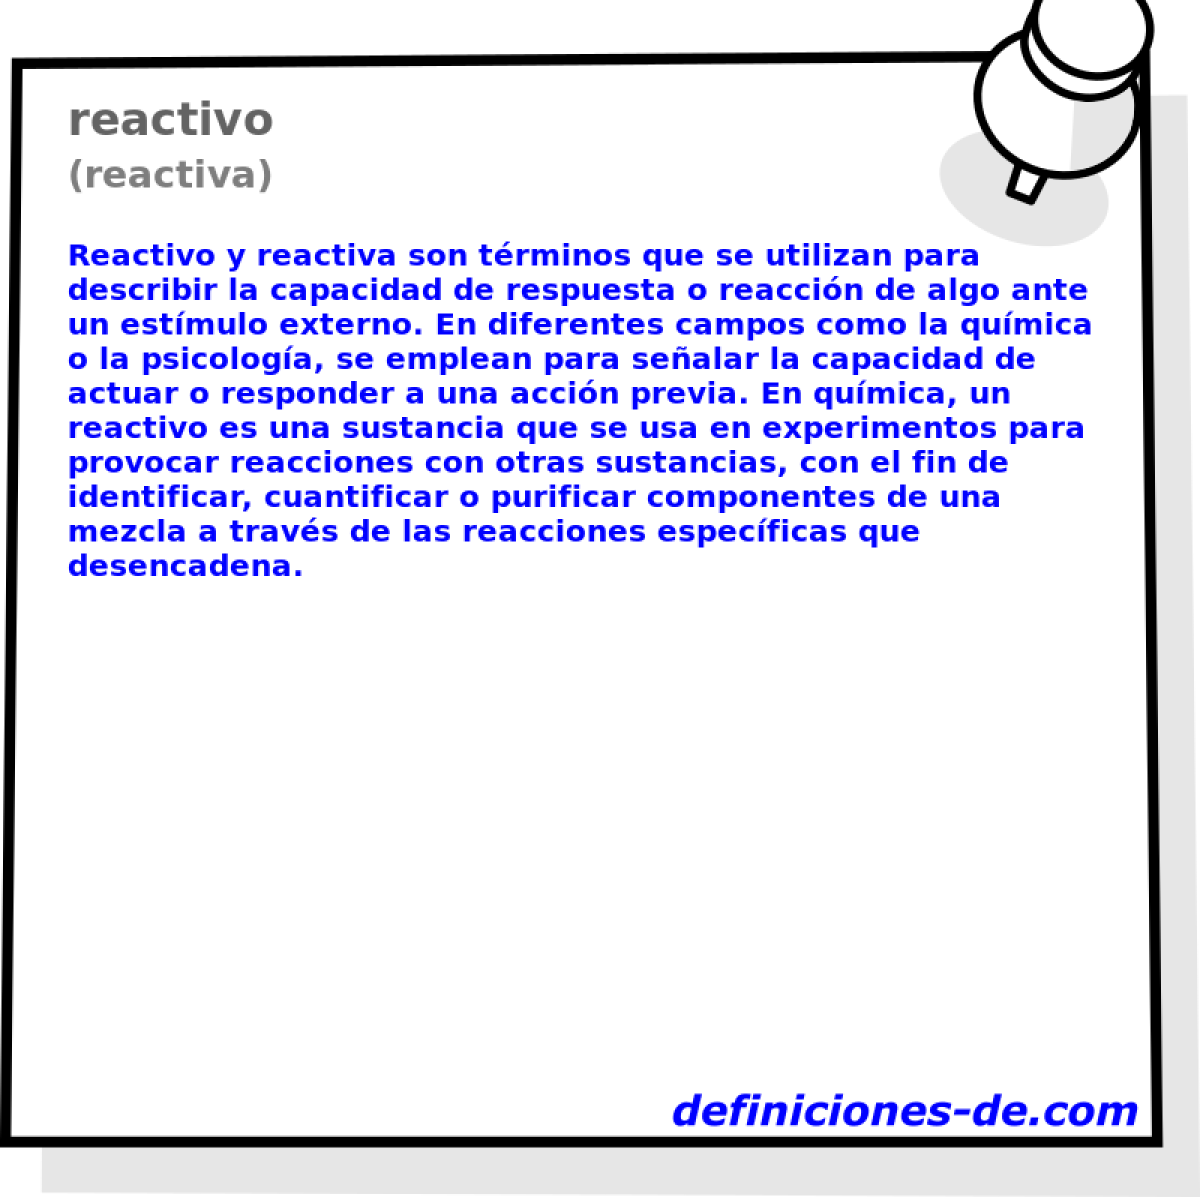 reactivo (reactiva)